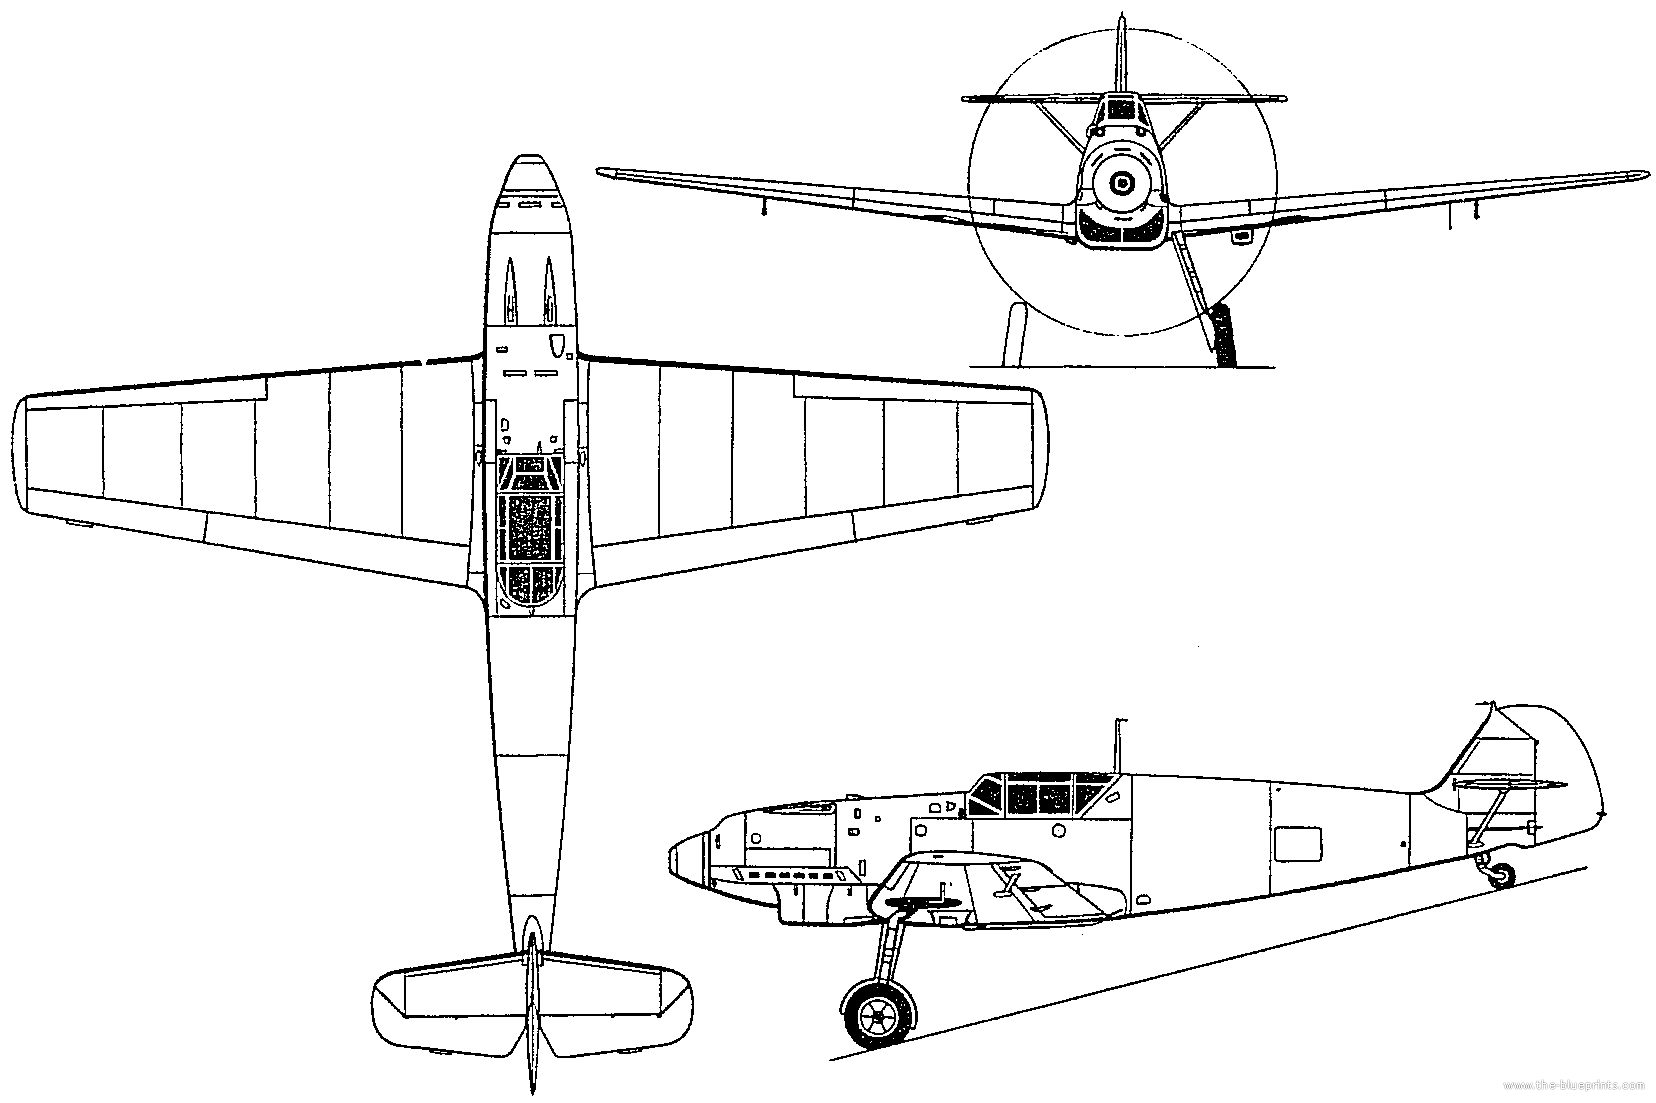 Messerschmitt Bf 109 Plans